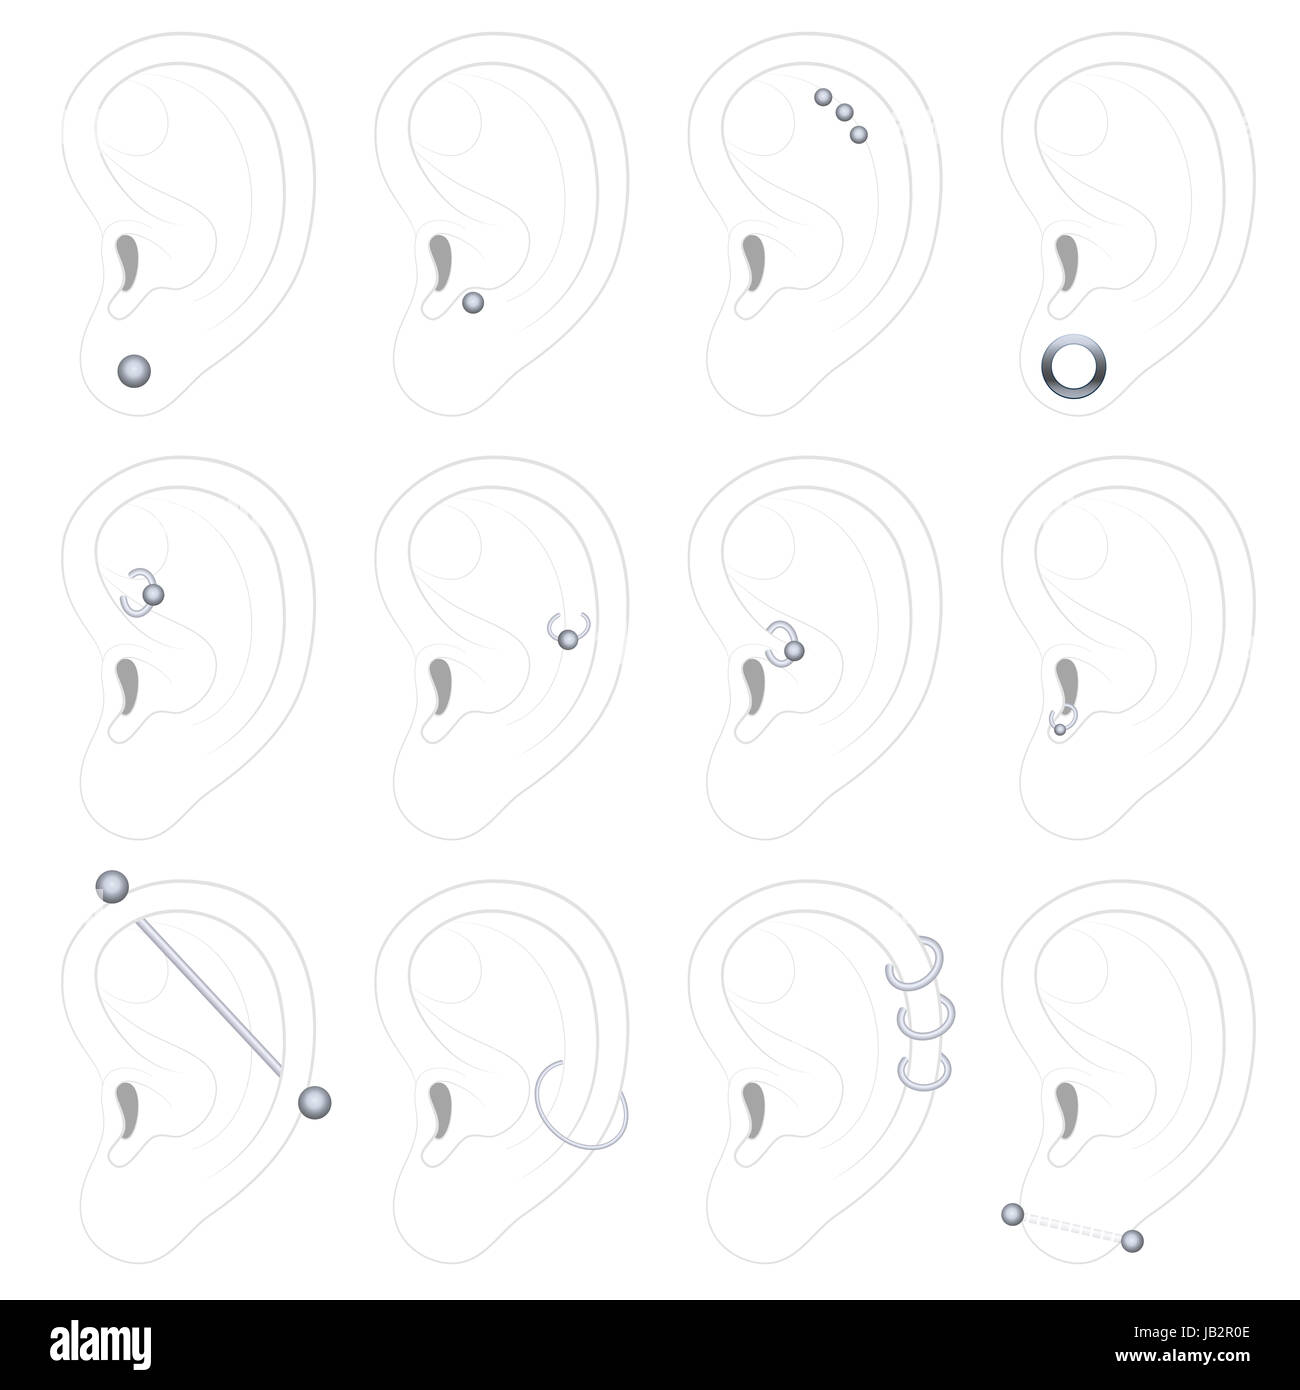 La perforación de las orejas ejemplos - doce tipos diferentes - Ilustración sobre fondo blanco. Foto de stock